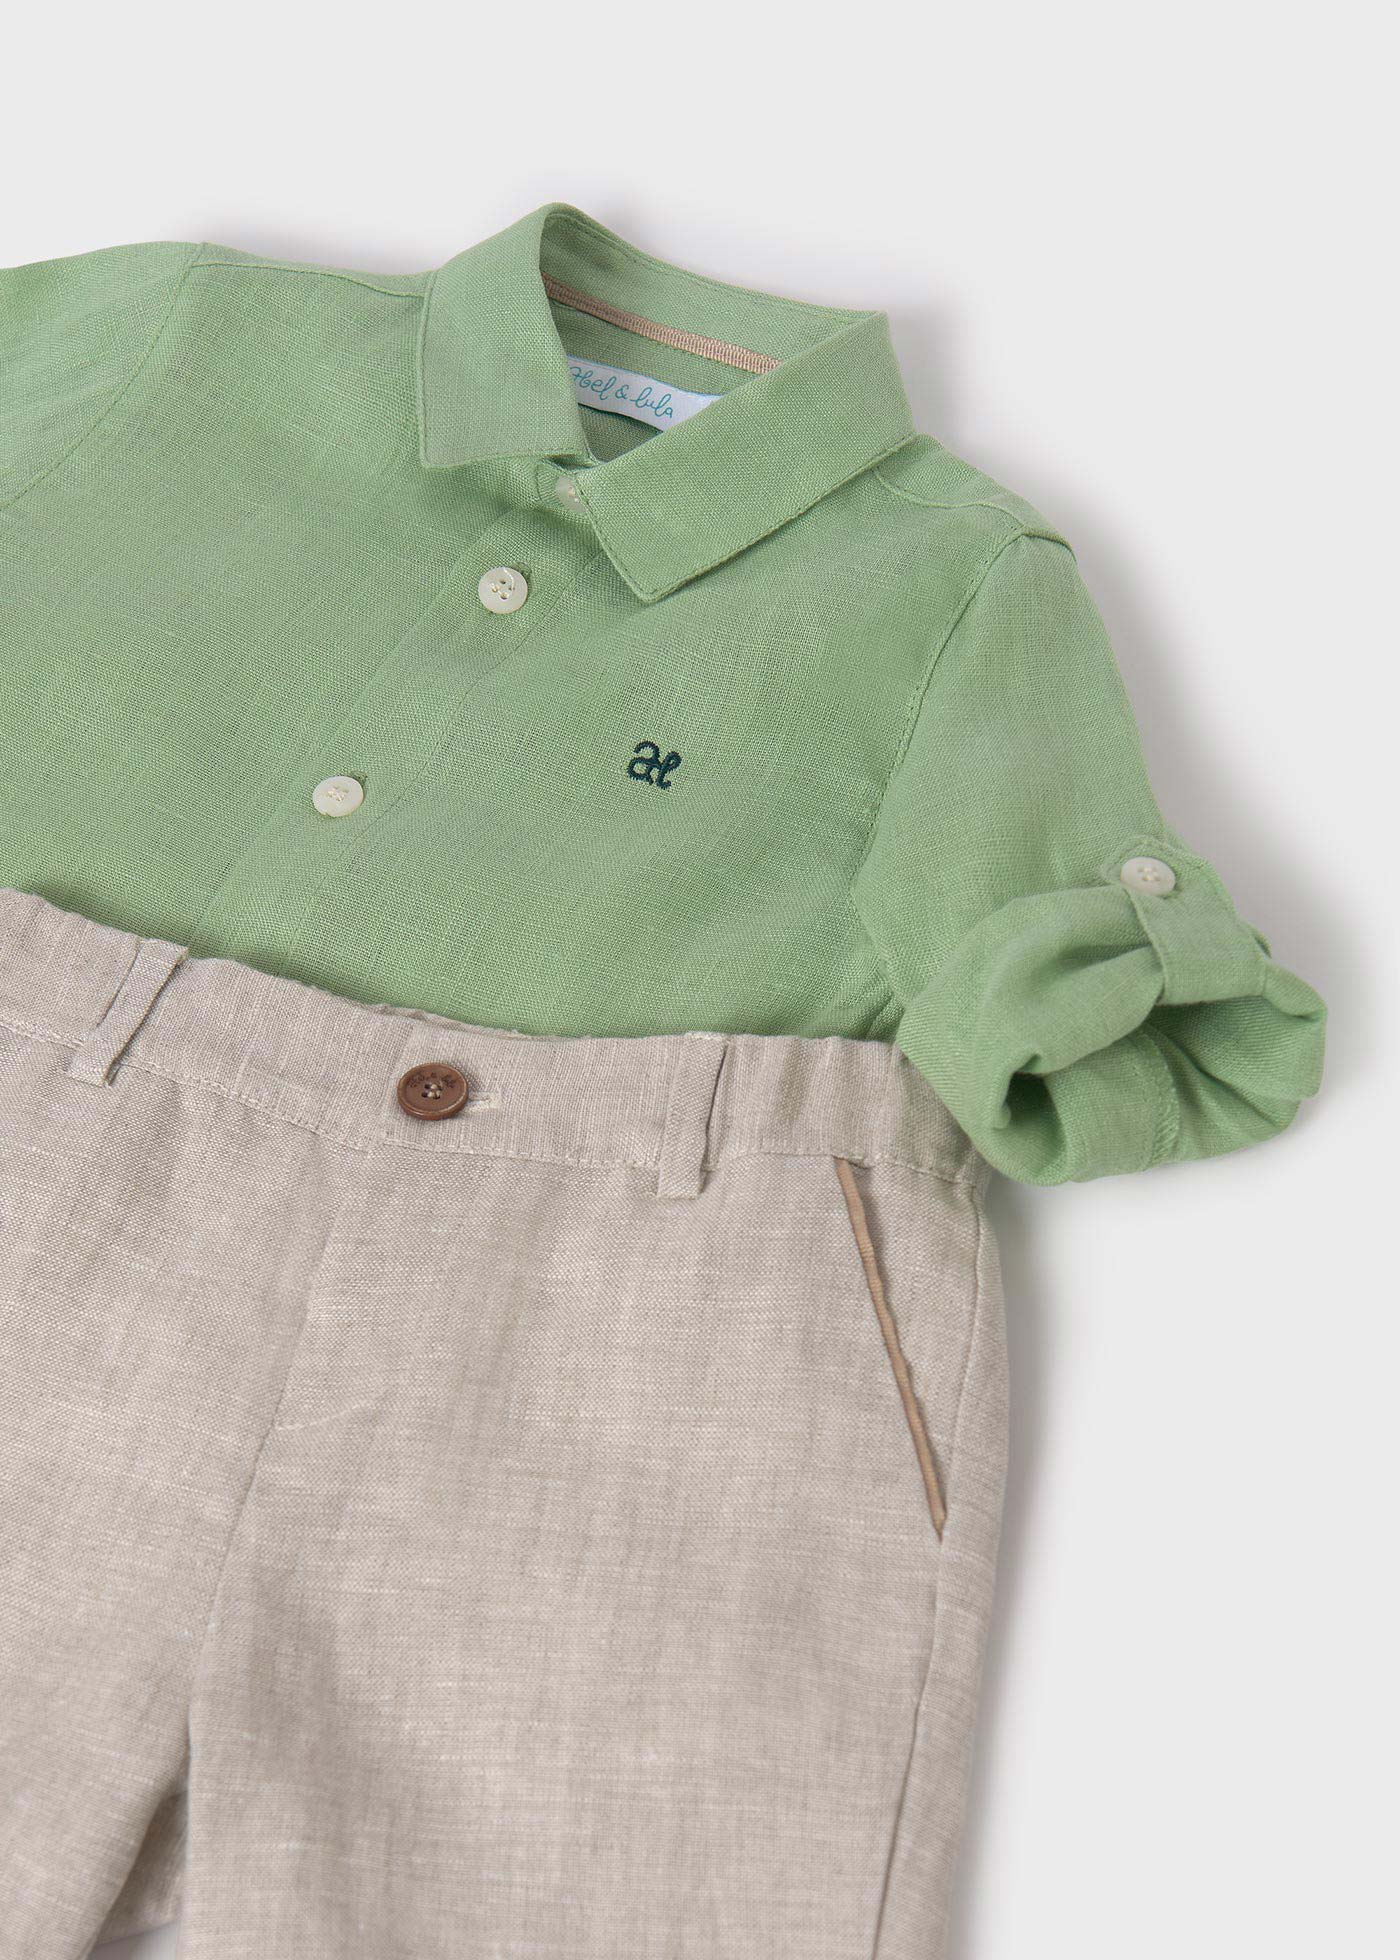 Boy Linen Shirt and Shorts Set